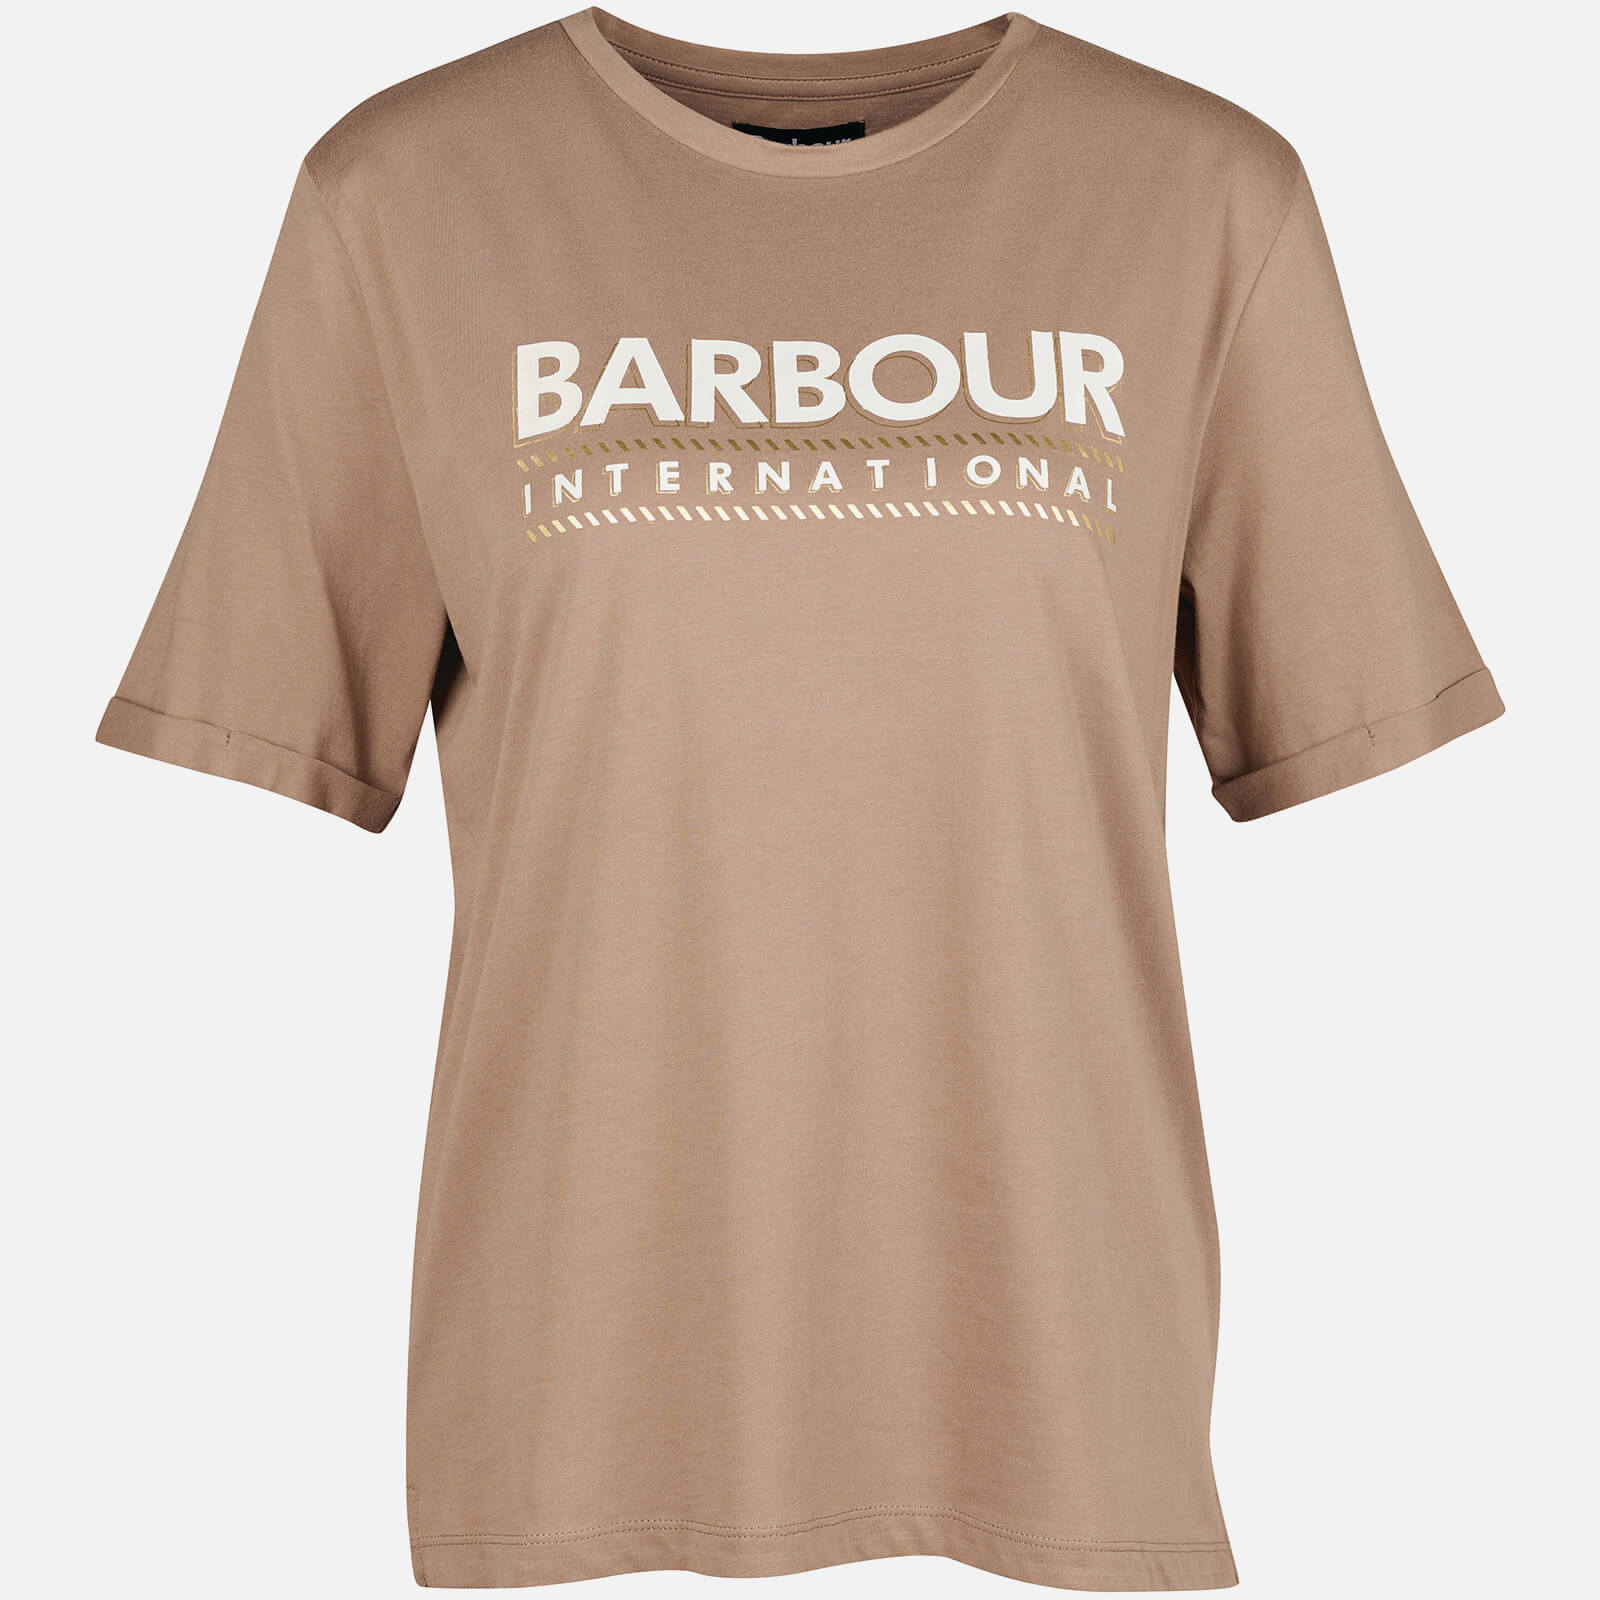 Barbour International B.Intl Monaco Cotton-Jersey Top